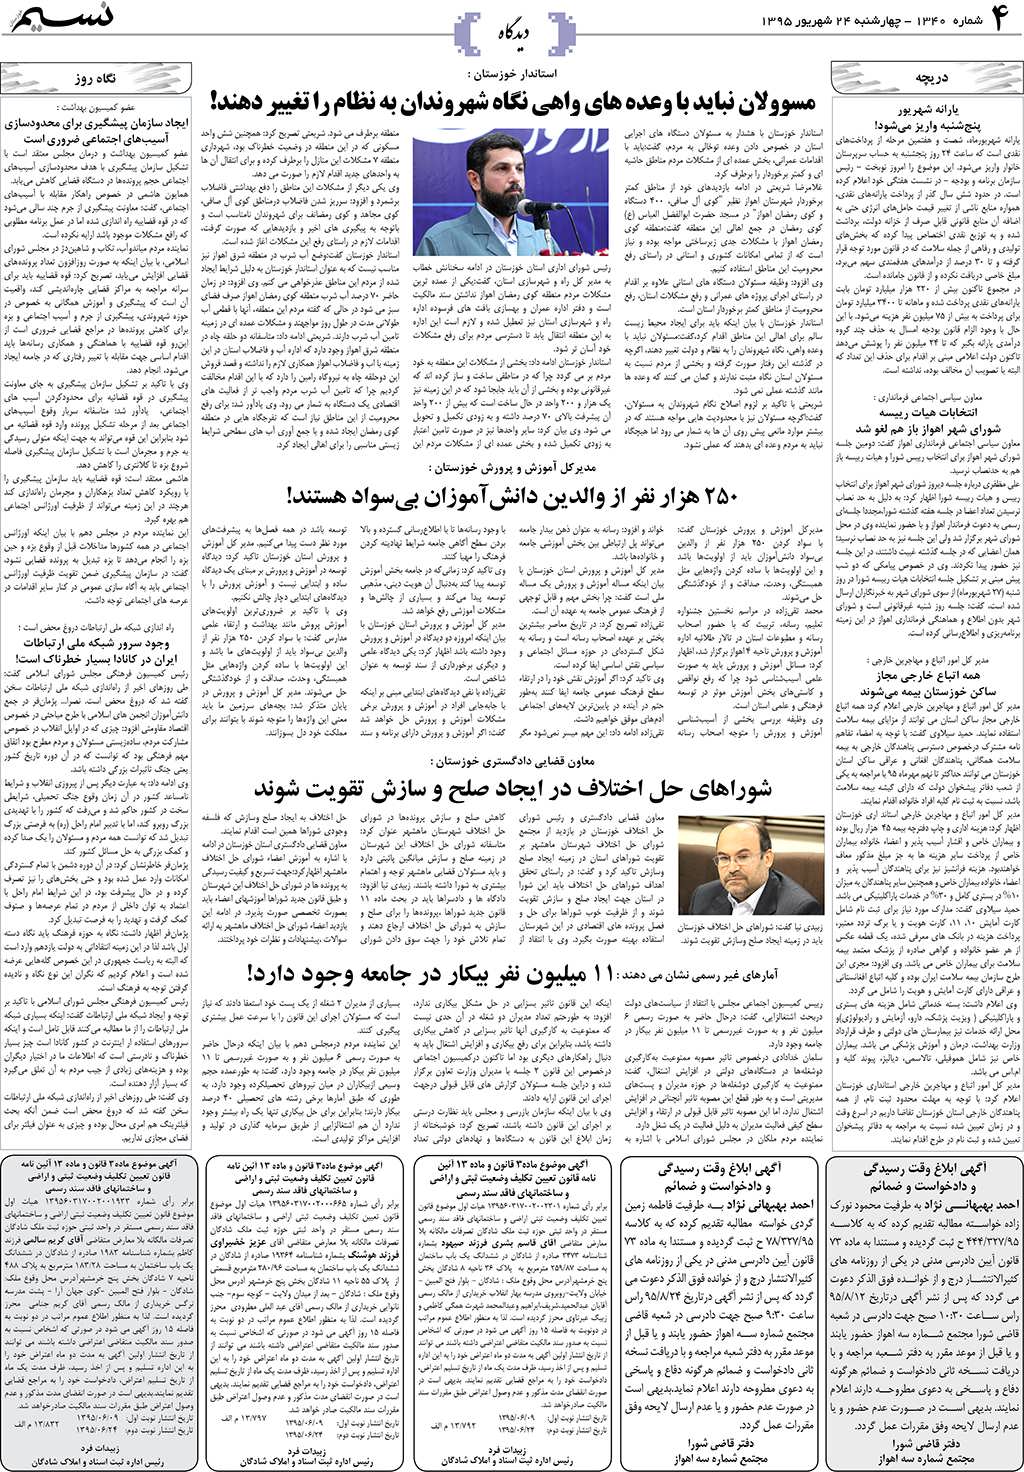 صفحه دیدگاه روزنامه نسیم شماره 1340